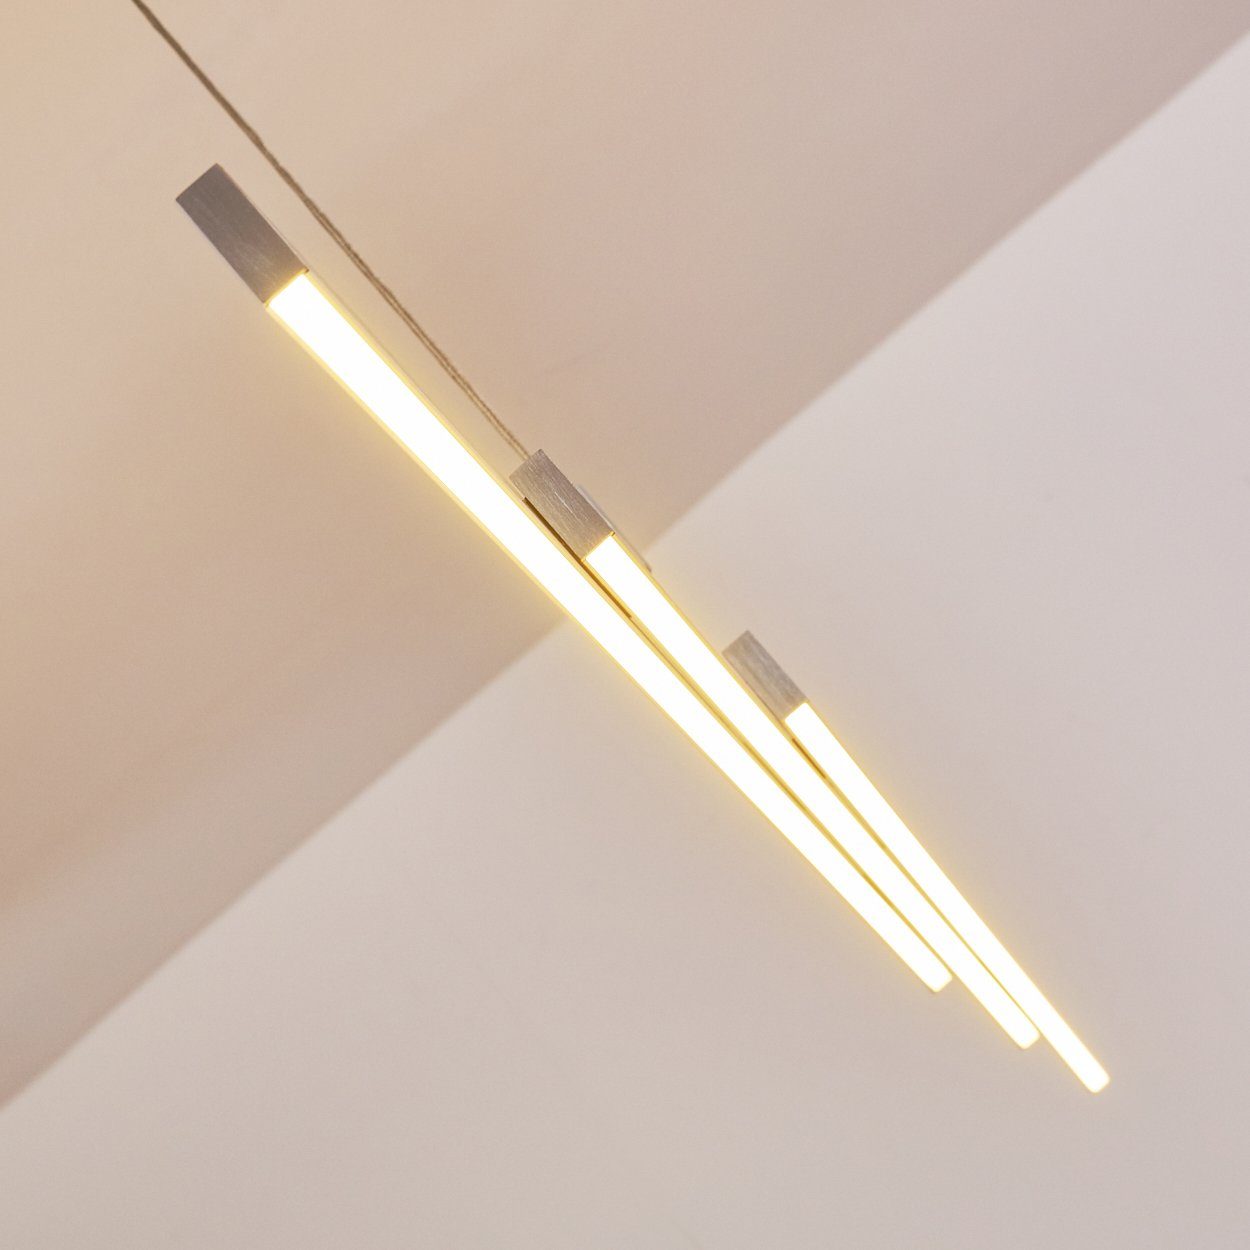 LED Schlaf Lampen Hänge Ess hofstein Raum Wohn Zimmer Pendel Pendelleuchte Beleuchtung Design